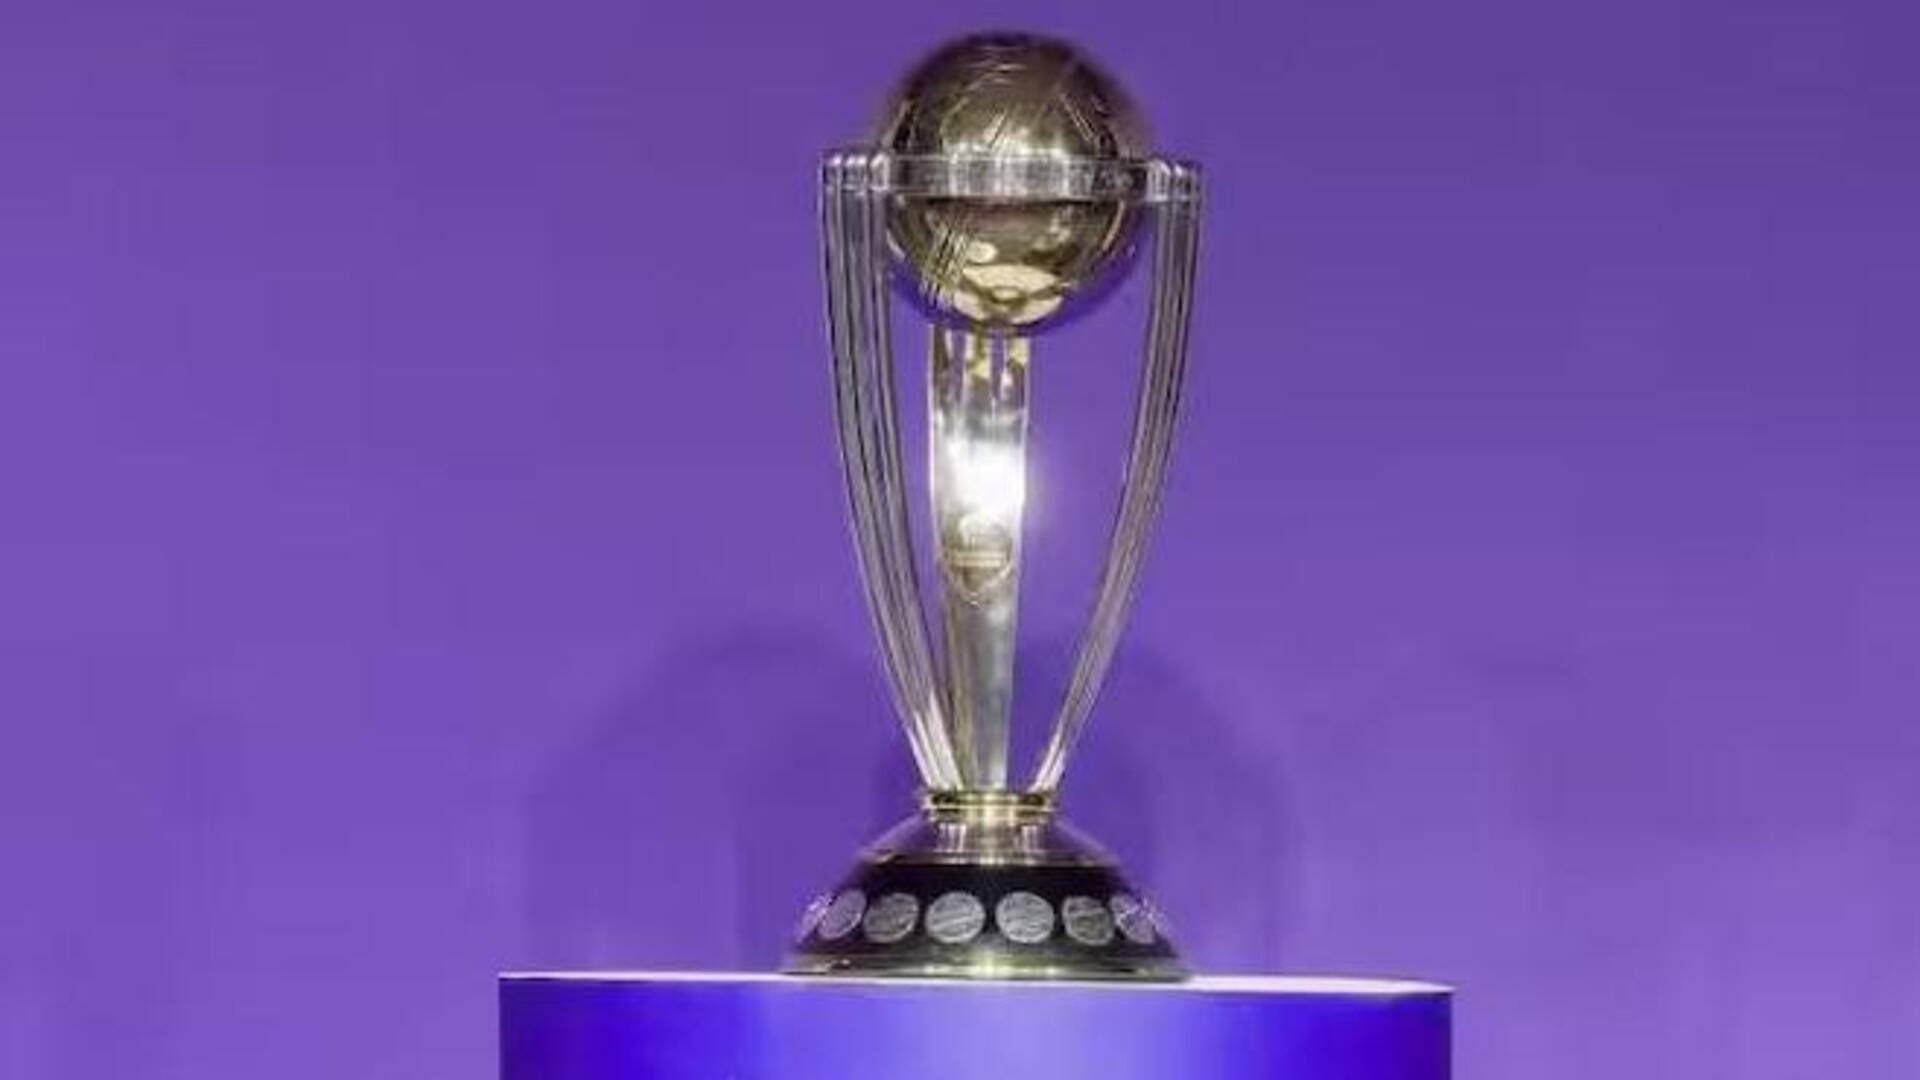 ODI World Cup Reserve Day : அரையிறுதி மற்றும் இறுதிப்போட்டிக்கான ரிசர்வ் நாள் குறித்த முழு விபரம்